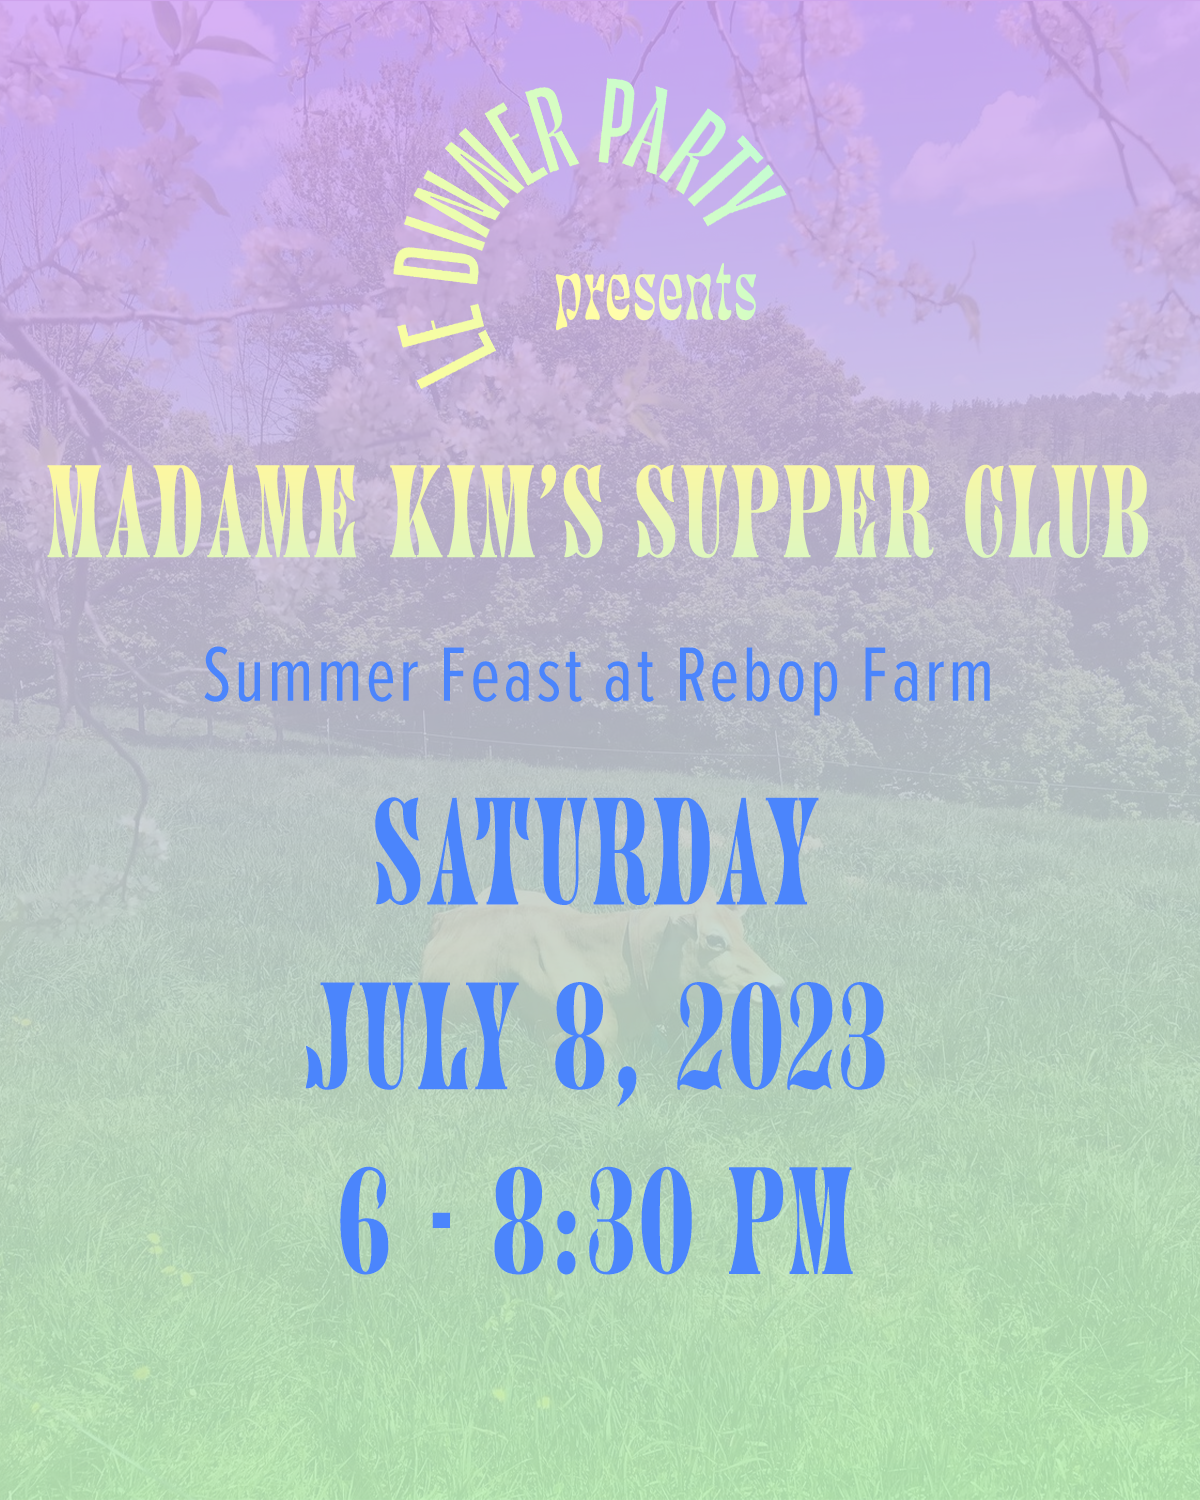 Madame Kim's Supper Club at Rebop Farm